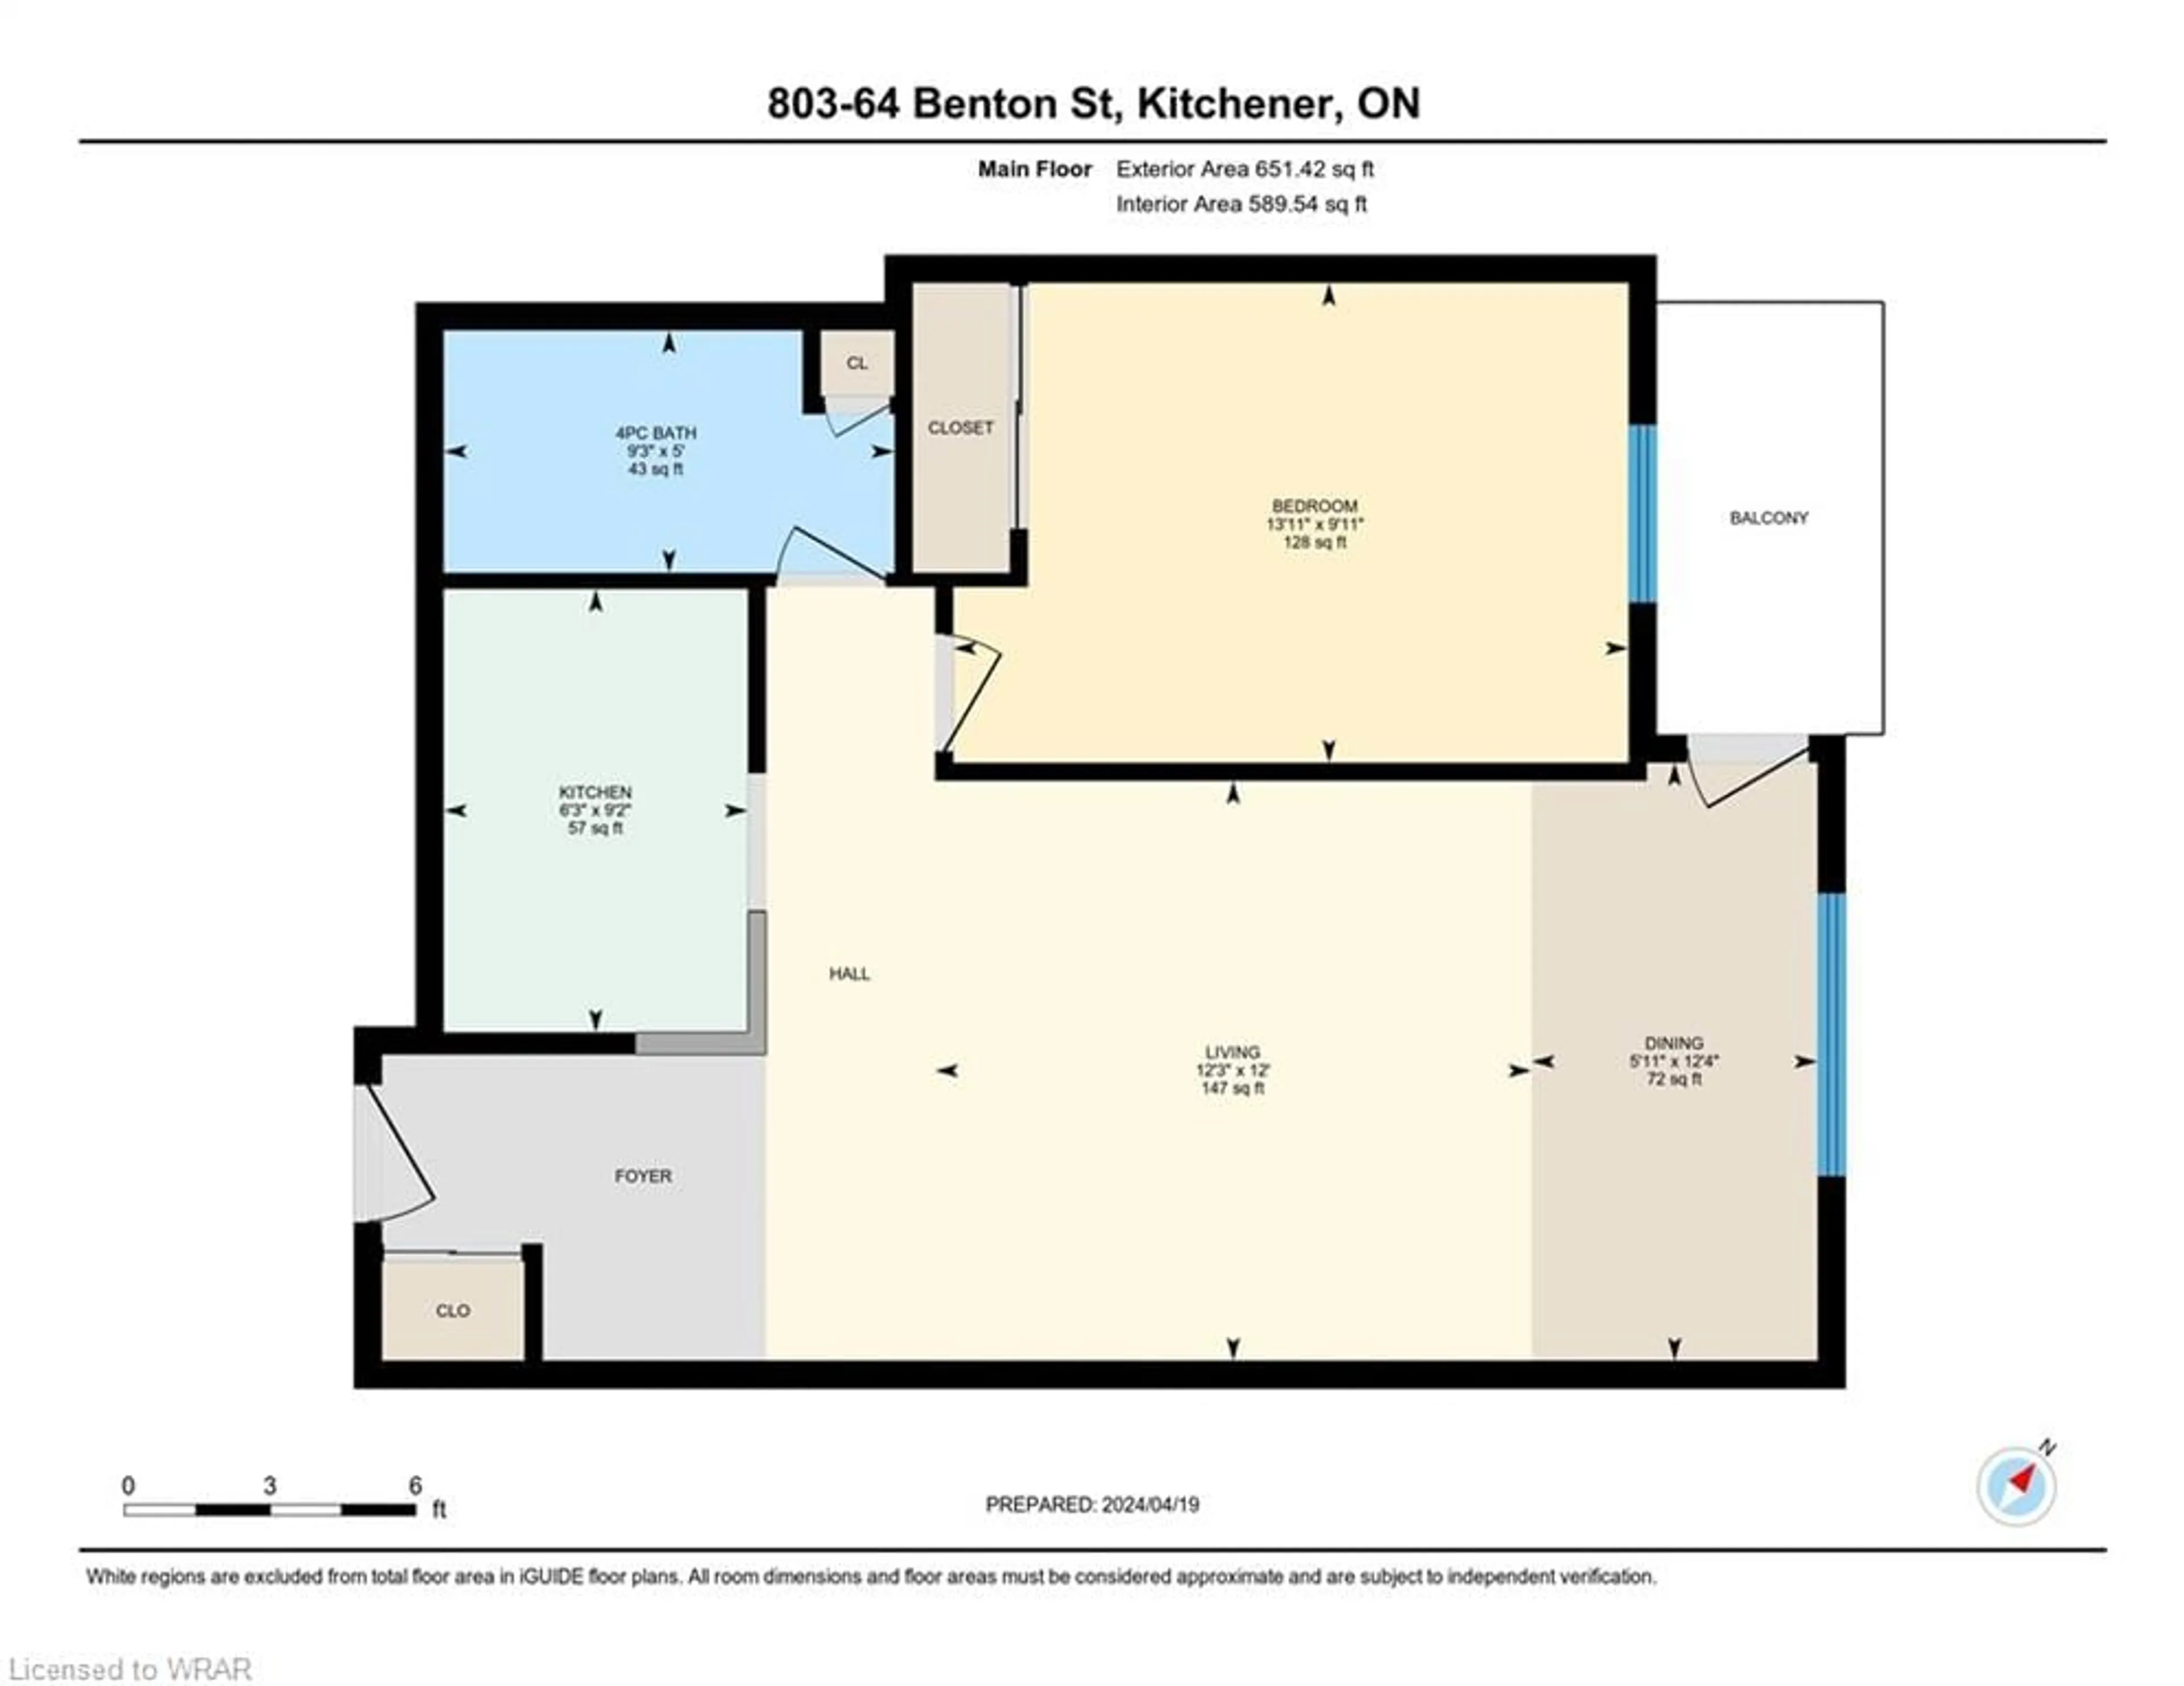 Floor plan for 64 Benton St #803, Kitchener Ontario N2G 4L9